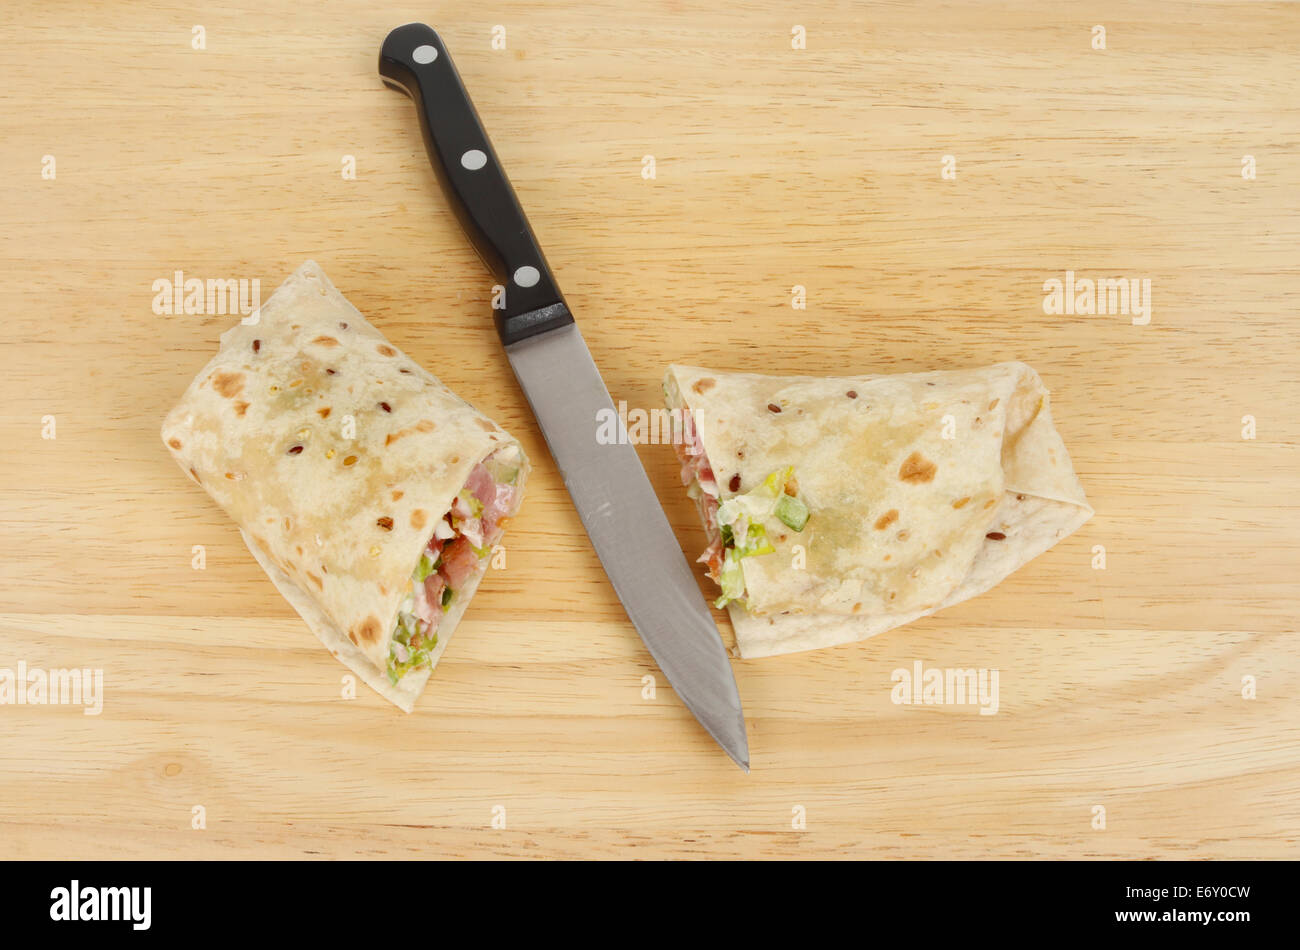 Geschnittenen Speck und Salat Brot-Wrap mit einem Messer auf einem Holzbrett Stockfoto